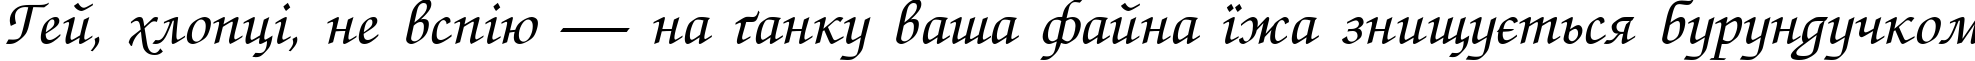 Пример написания шрифтом Zapf Chance Italic текста на украинском